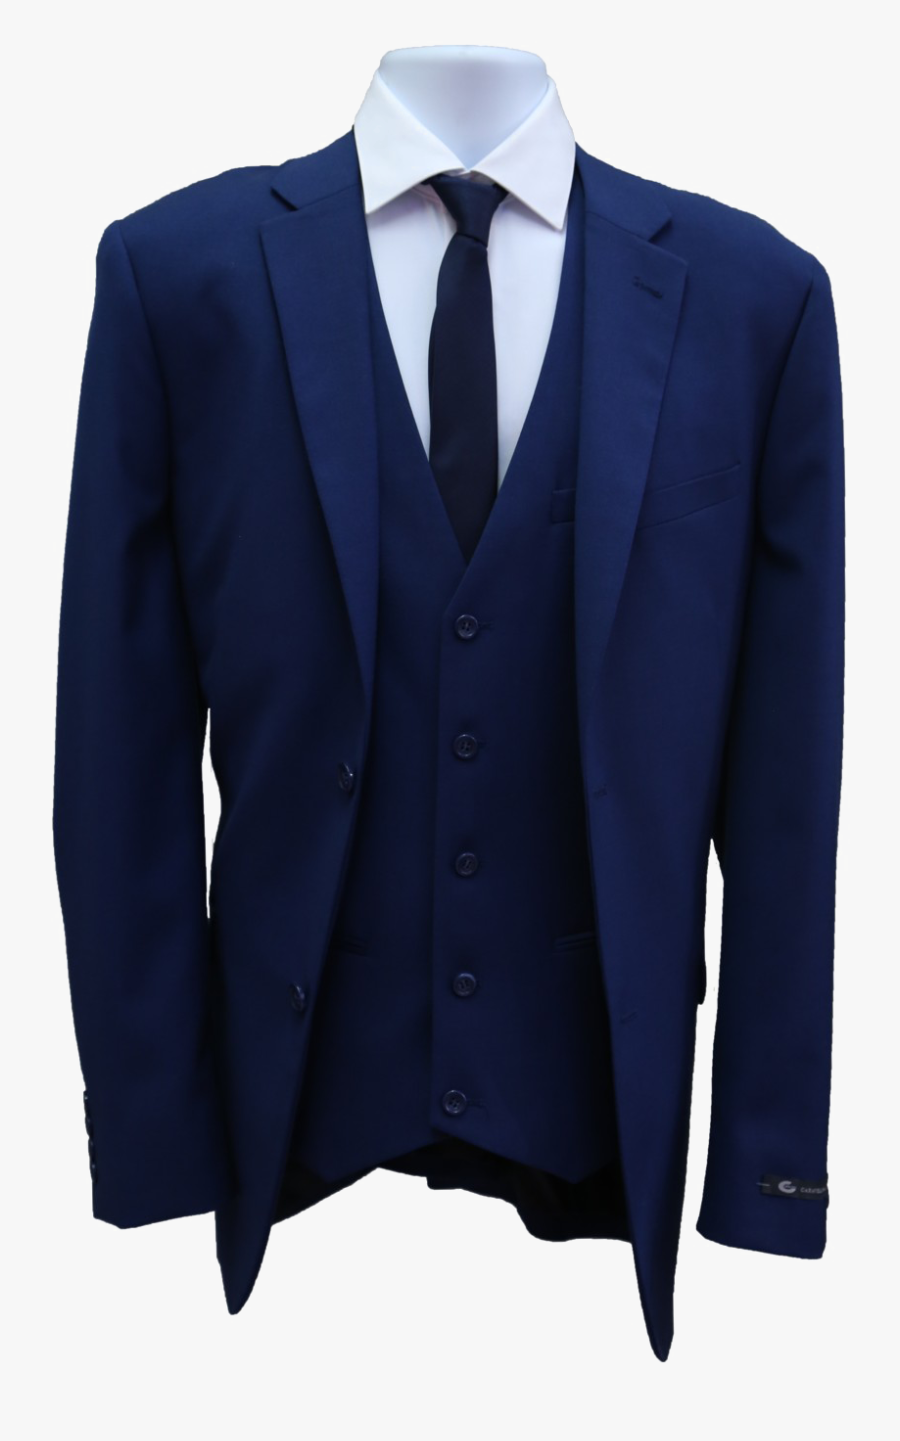 1000 X 1500 - Blue Suit Coat Png, Transparent Clipart